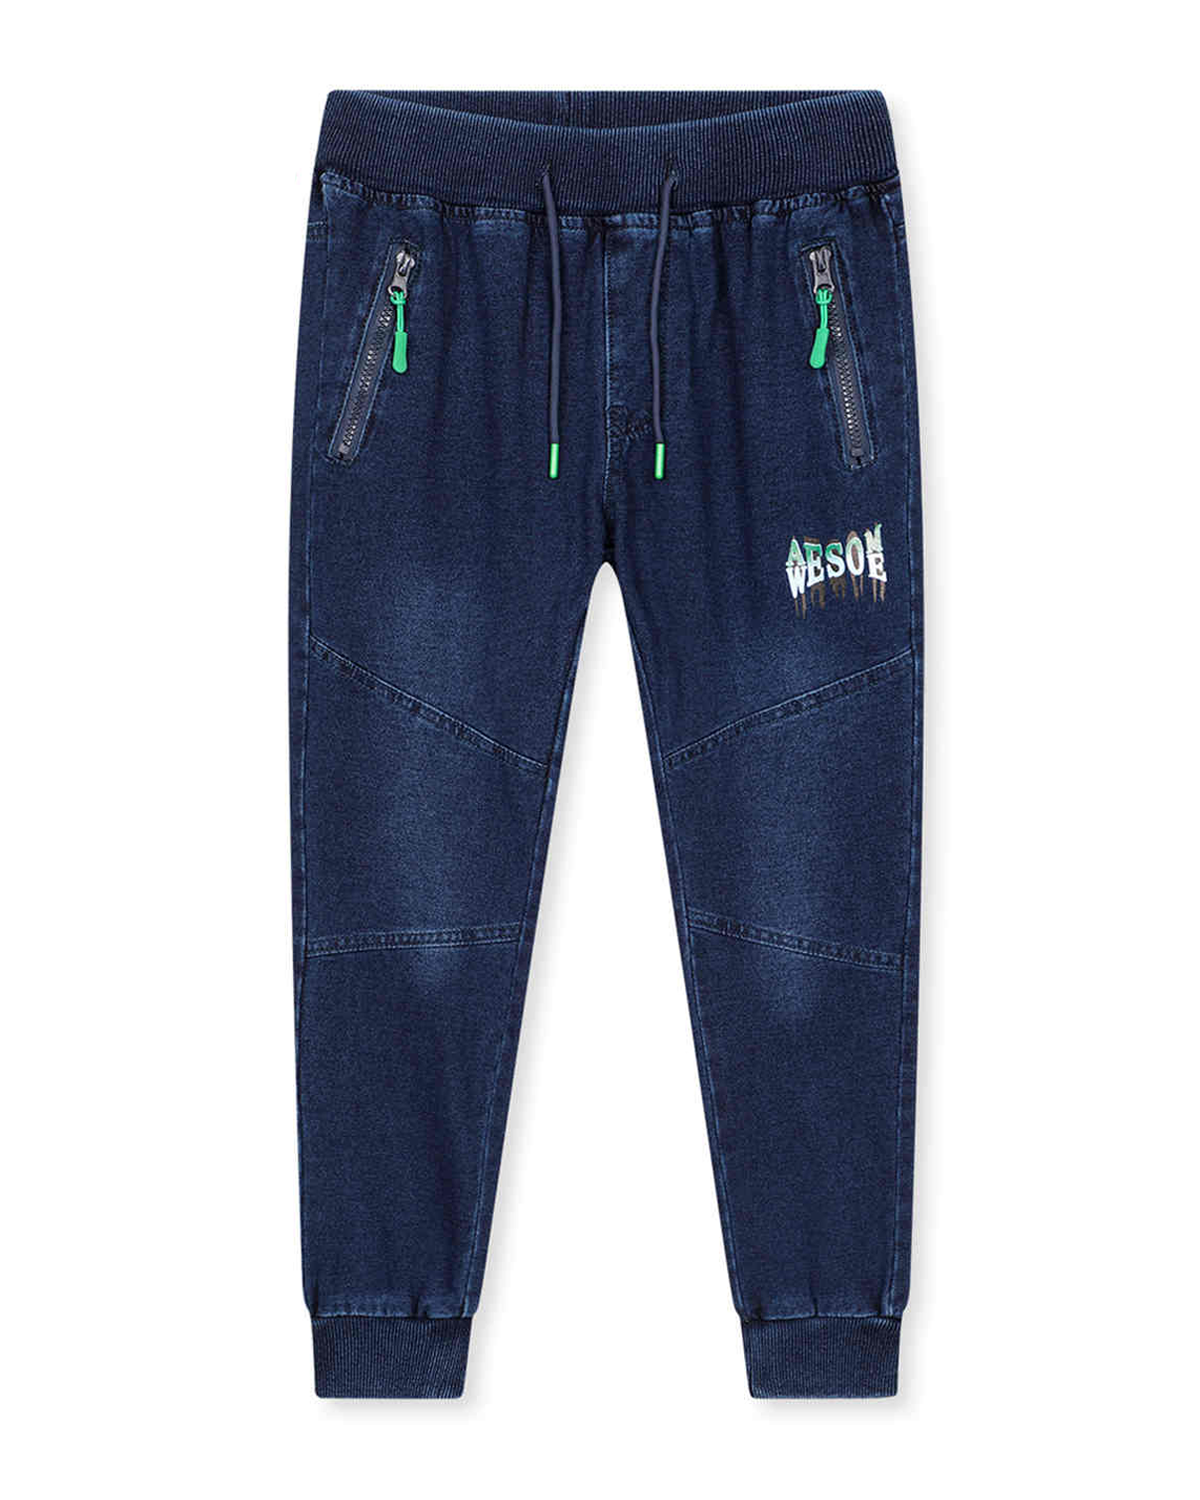 Chlapecké riflové kalhoty / tepláky - KUGO CK0928, modrá / zelená aplikace Barva: Modrá, Velikost: 164